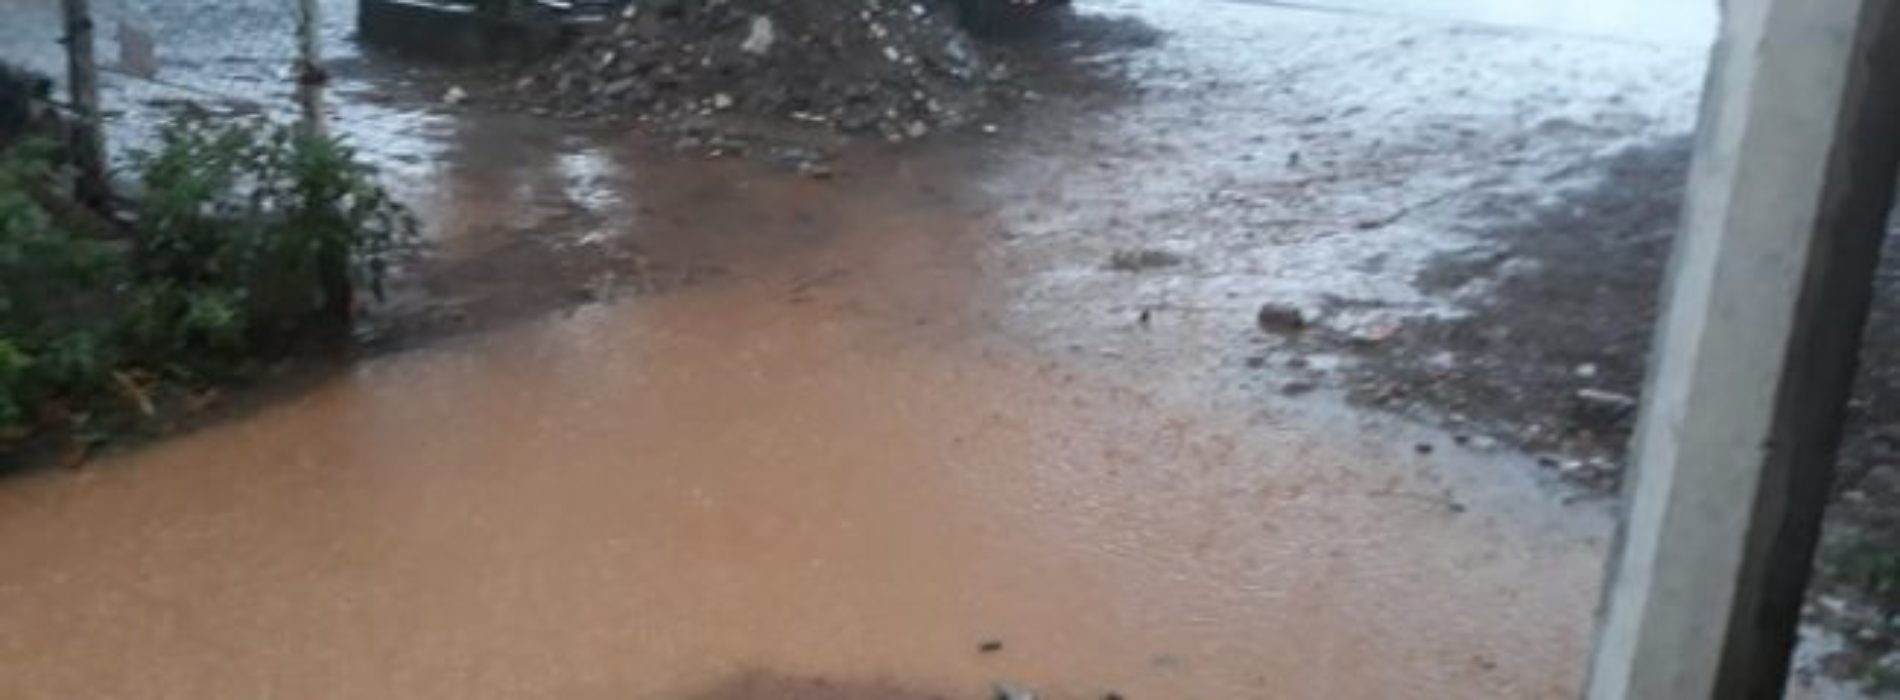 Aumenta la suspensión de clases a 98 municipios por las
fuertes lluvias: IEEPO